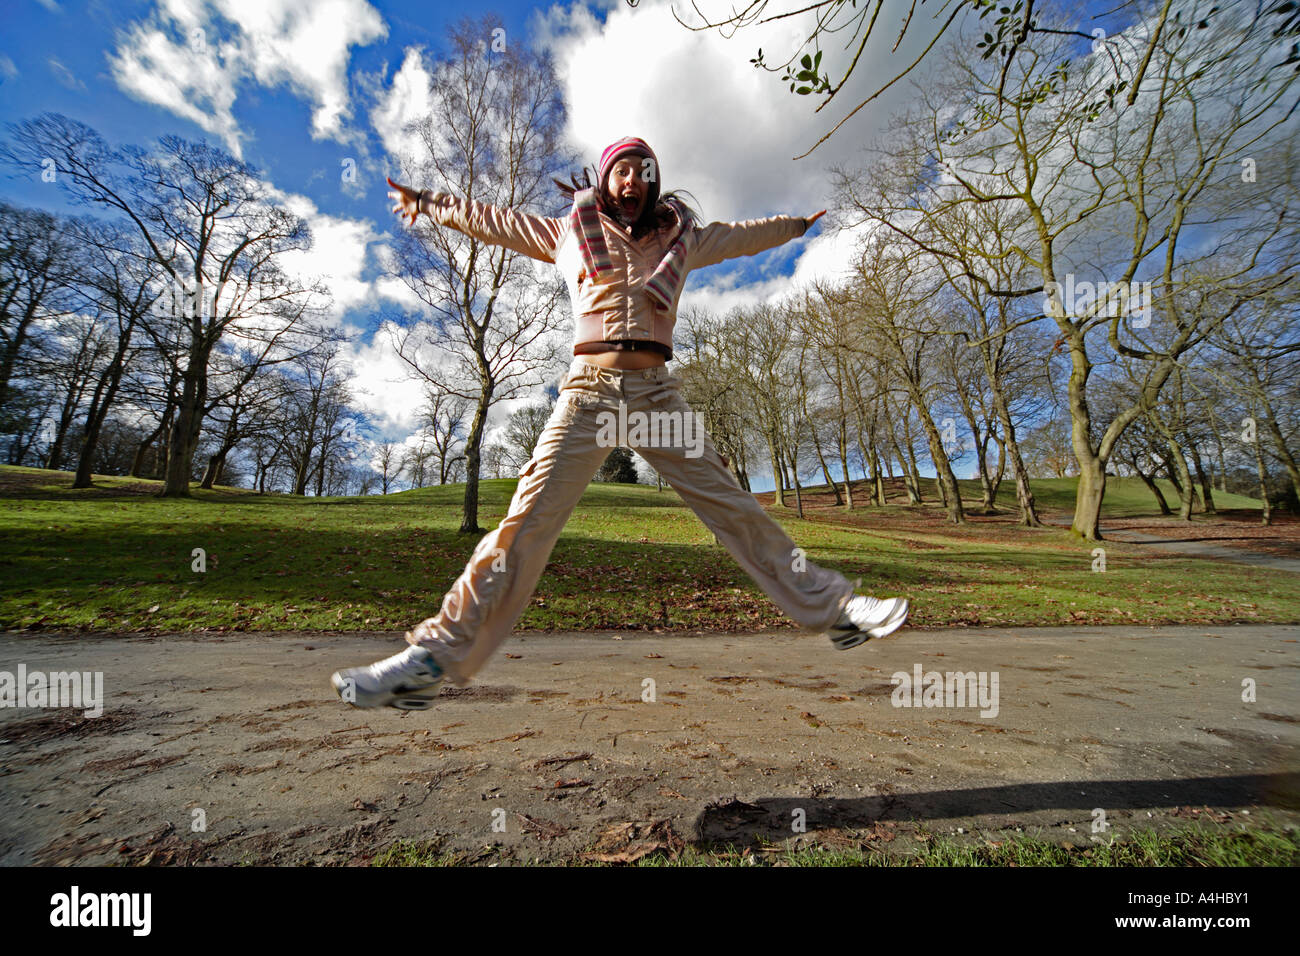 Grand angle dynamique et coloré de l'action de jeune fille de 16 ans faisant un coup de ciseaux, plein d'énergie dans un parc avec des arbres Banque D'Images